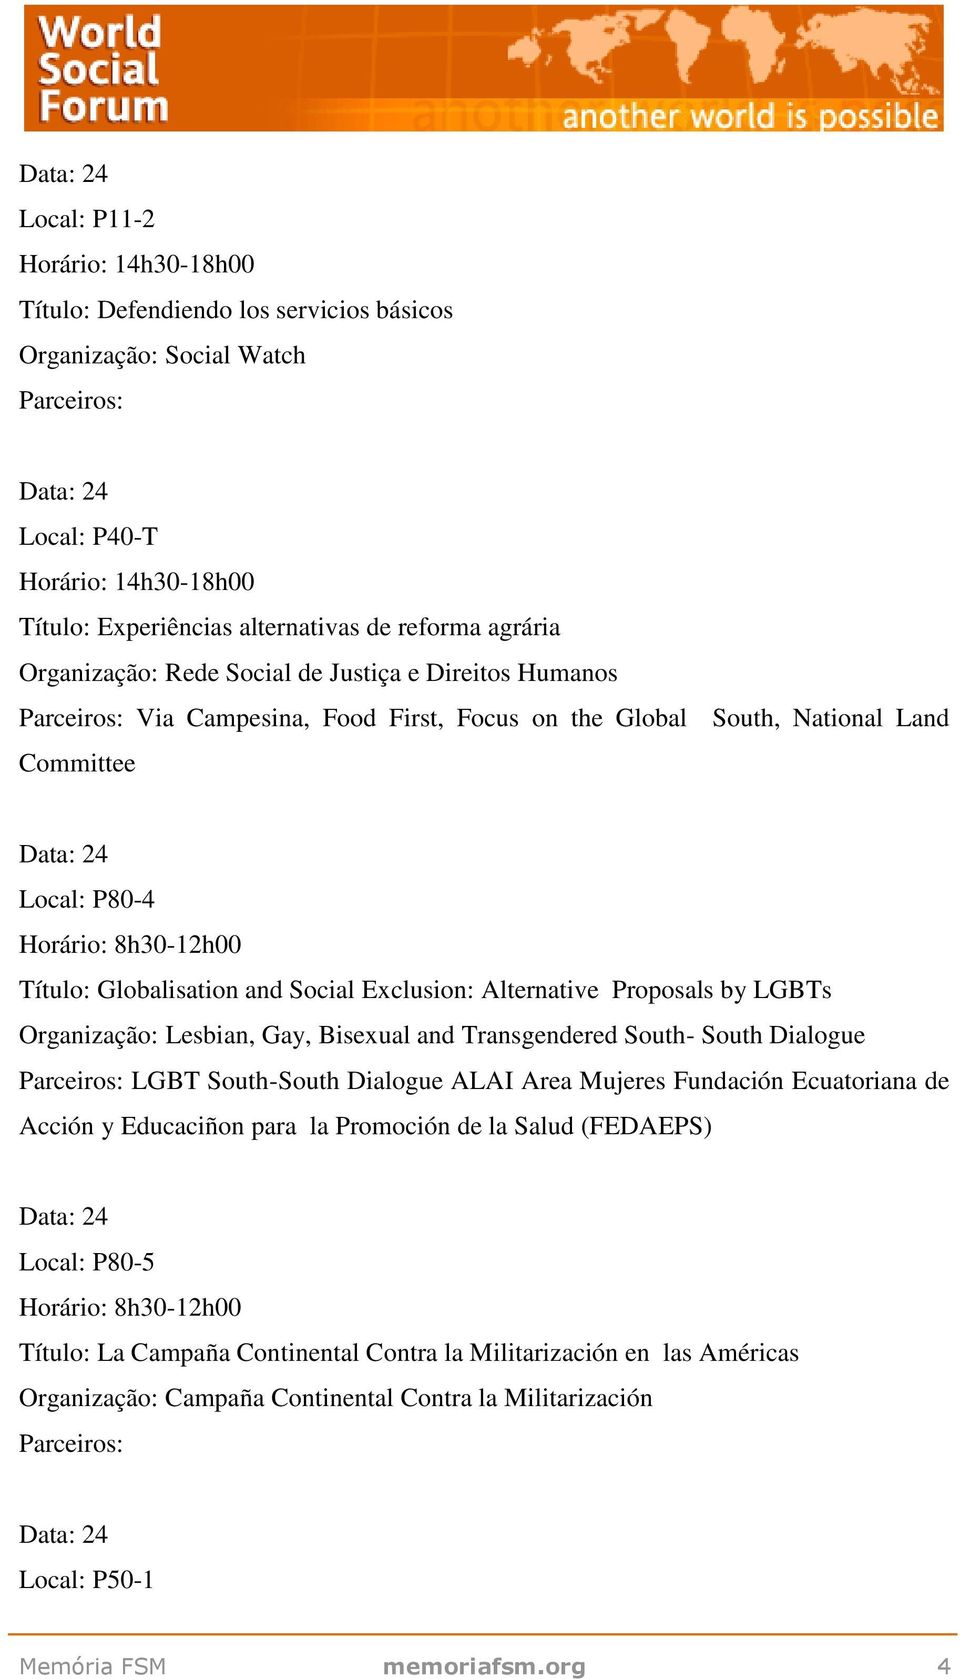 Gay, Bisexual and Transgendered South- South Dialogue LGBT South-South Dialogue ALAI Area Mujeres Fundación Ecuatoriana de Acción y Educaciñon para la Promoción de la Salud